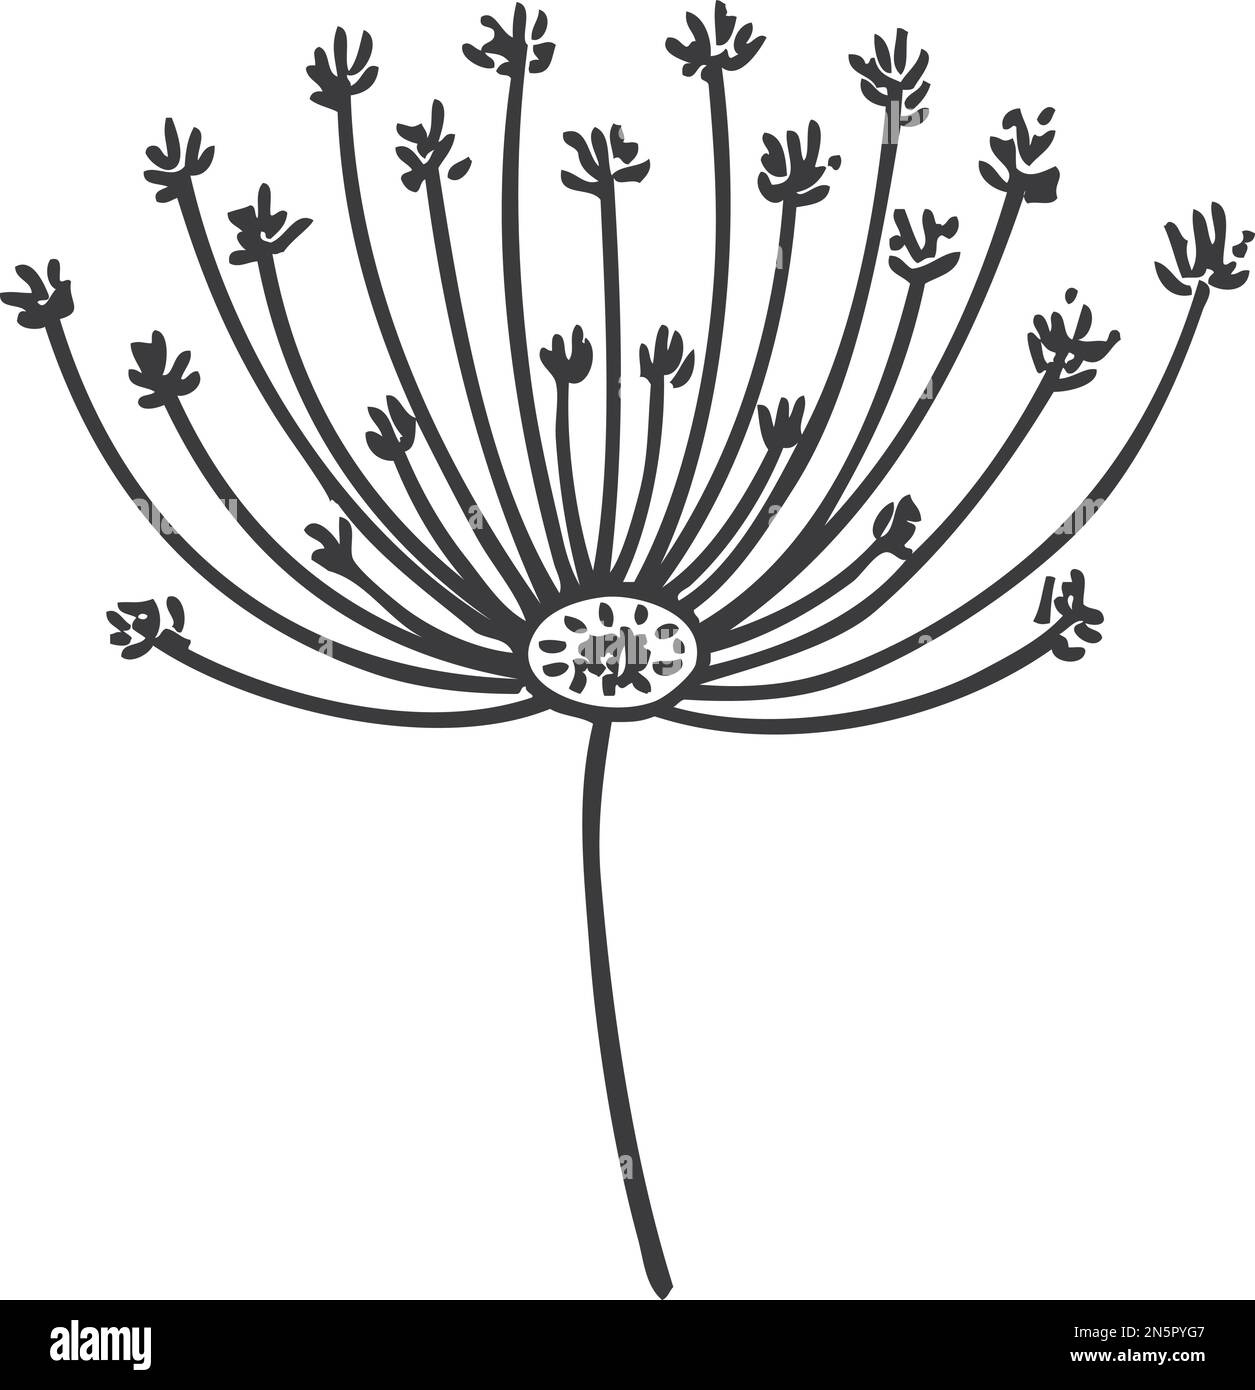 Icona dente di leone disegnata a mano. Semi floreali neri Illustrazione Vettoriale